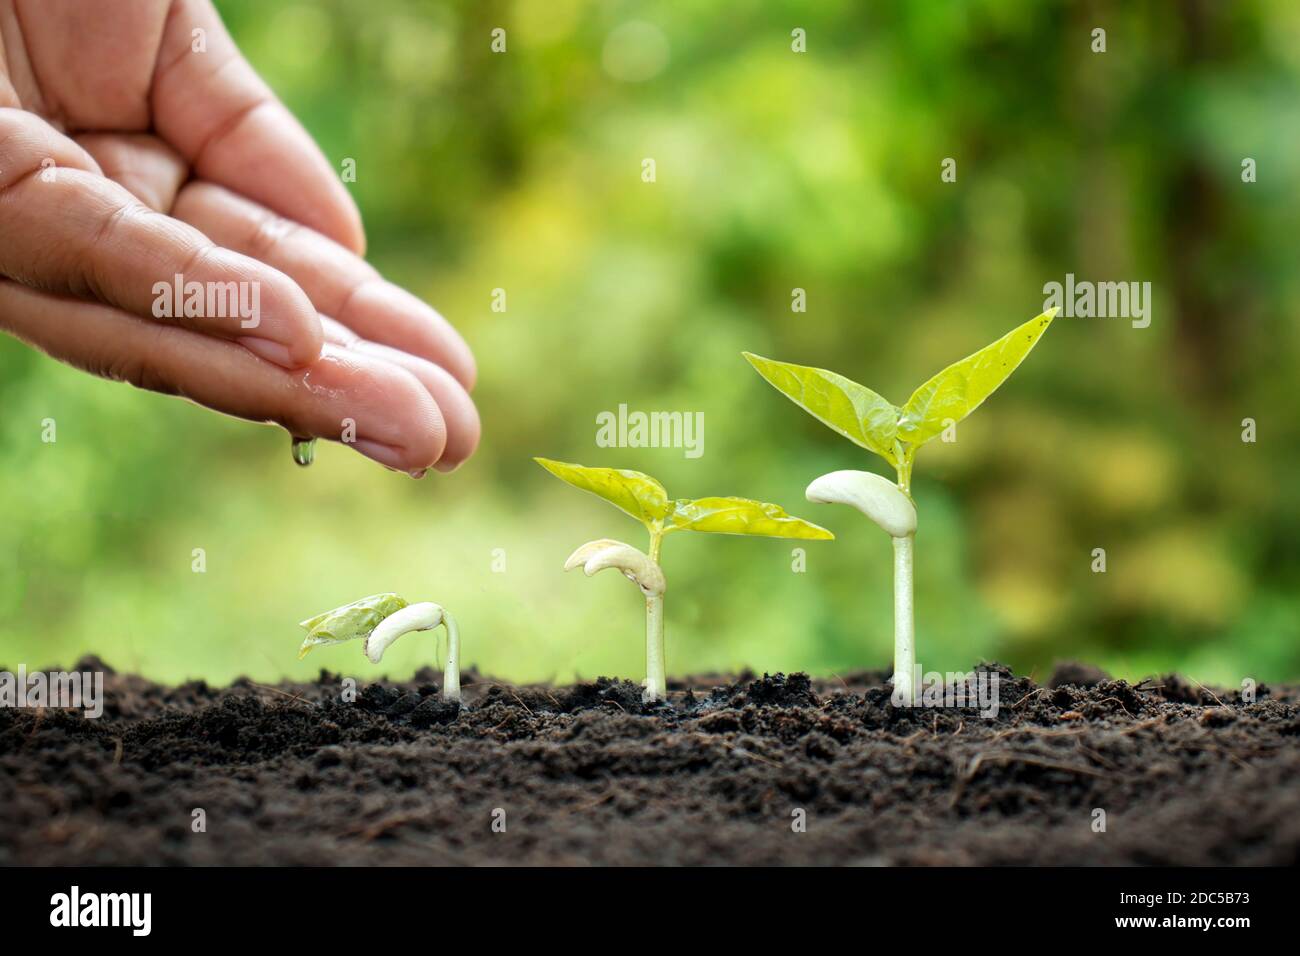 Kleine Pflanzen wachsen auf fruchtbarem Boden und bewässern die Pflanzen sowie zeigen die Wachstumsstadien der Pflanzen. Stockfoto